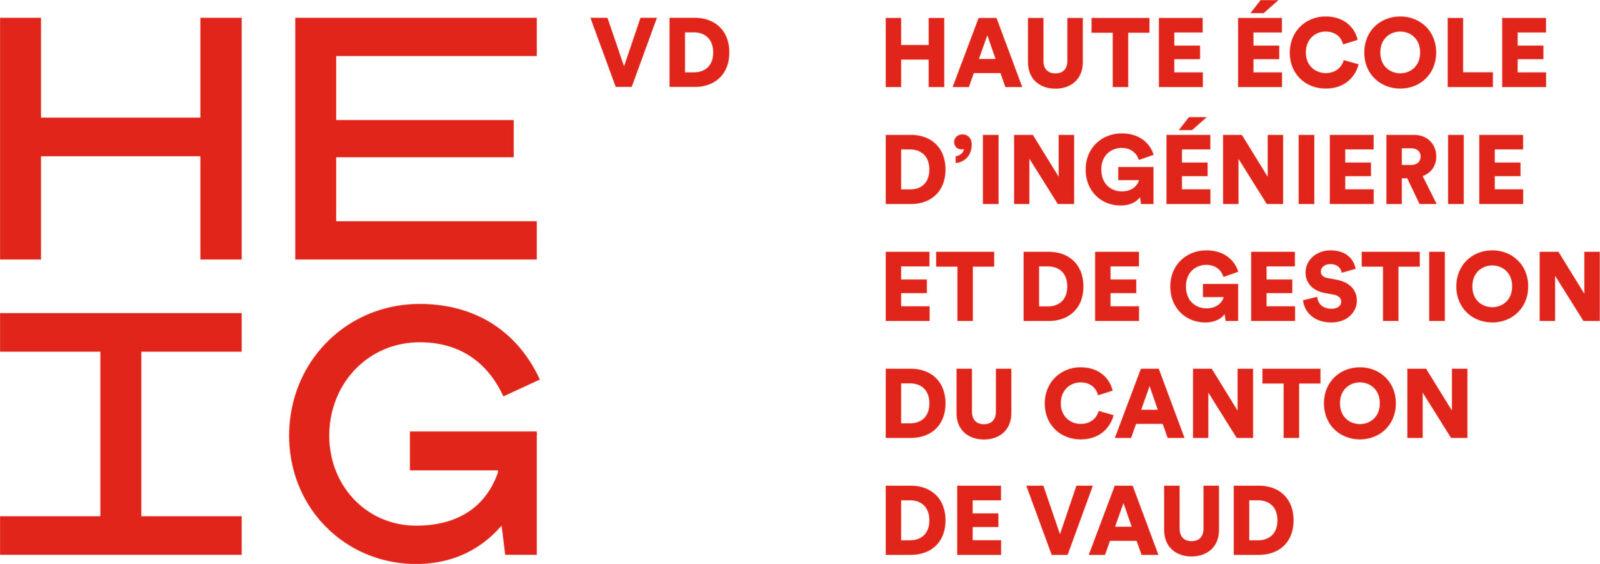 Haute Ecole d’Ingénierie et 
de Gestion du Canton de Vaud (HEIG-VD)